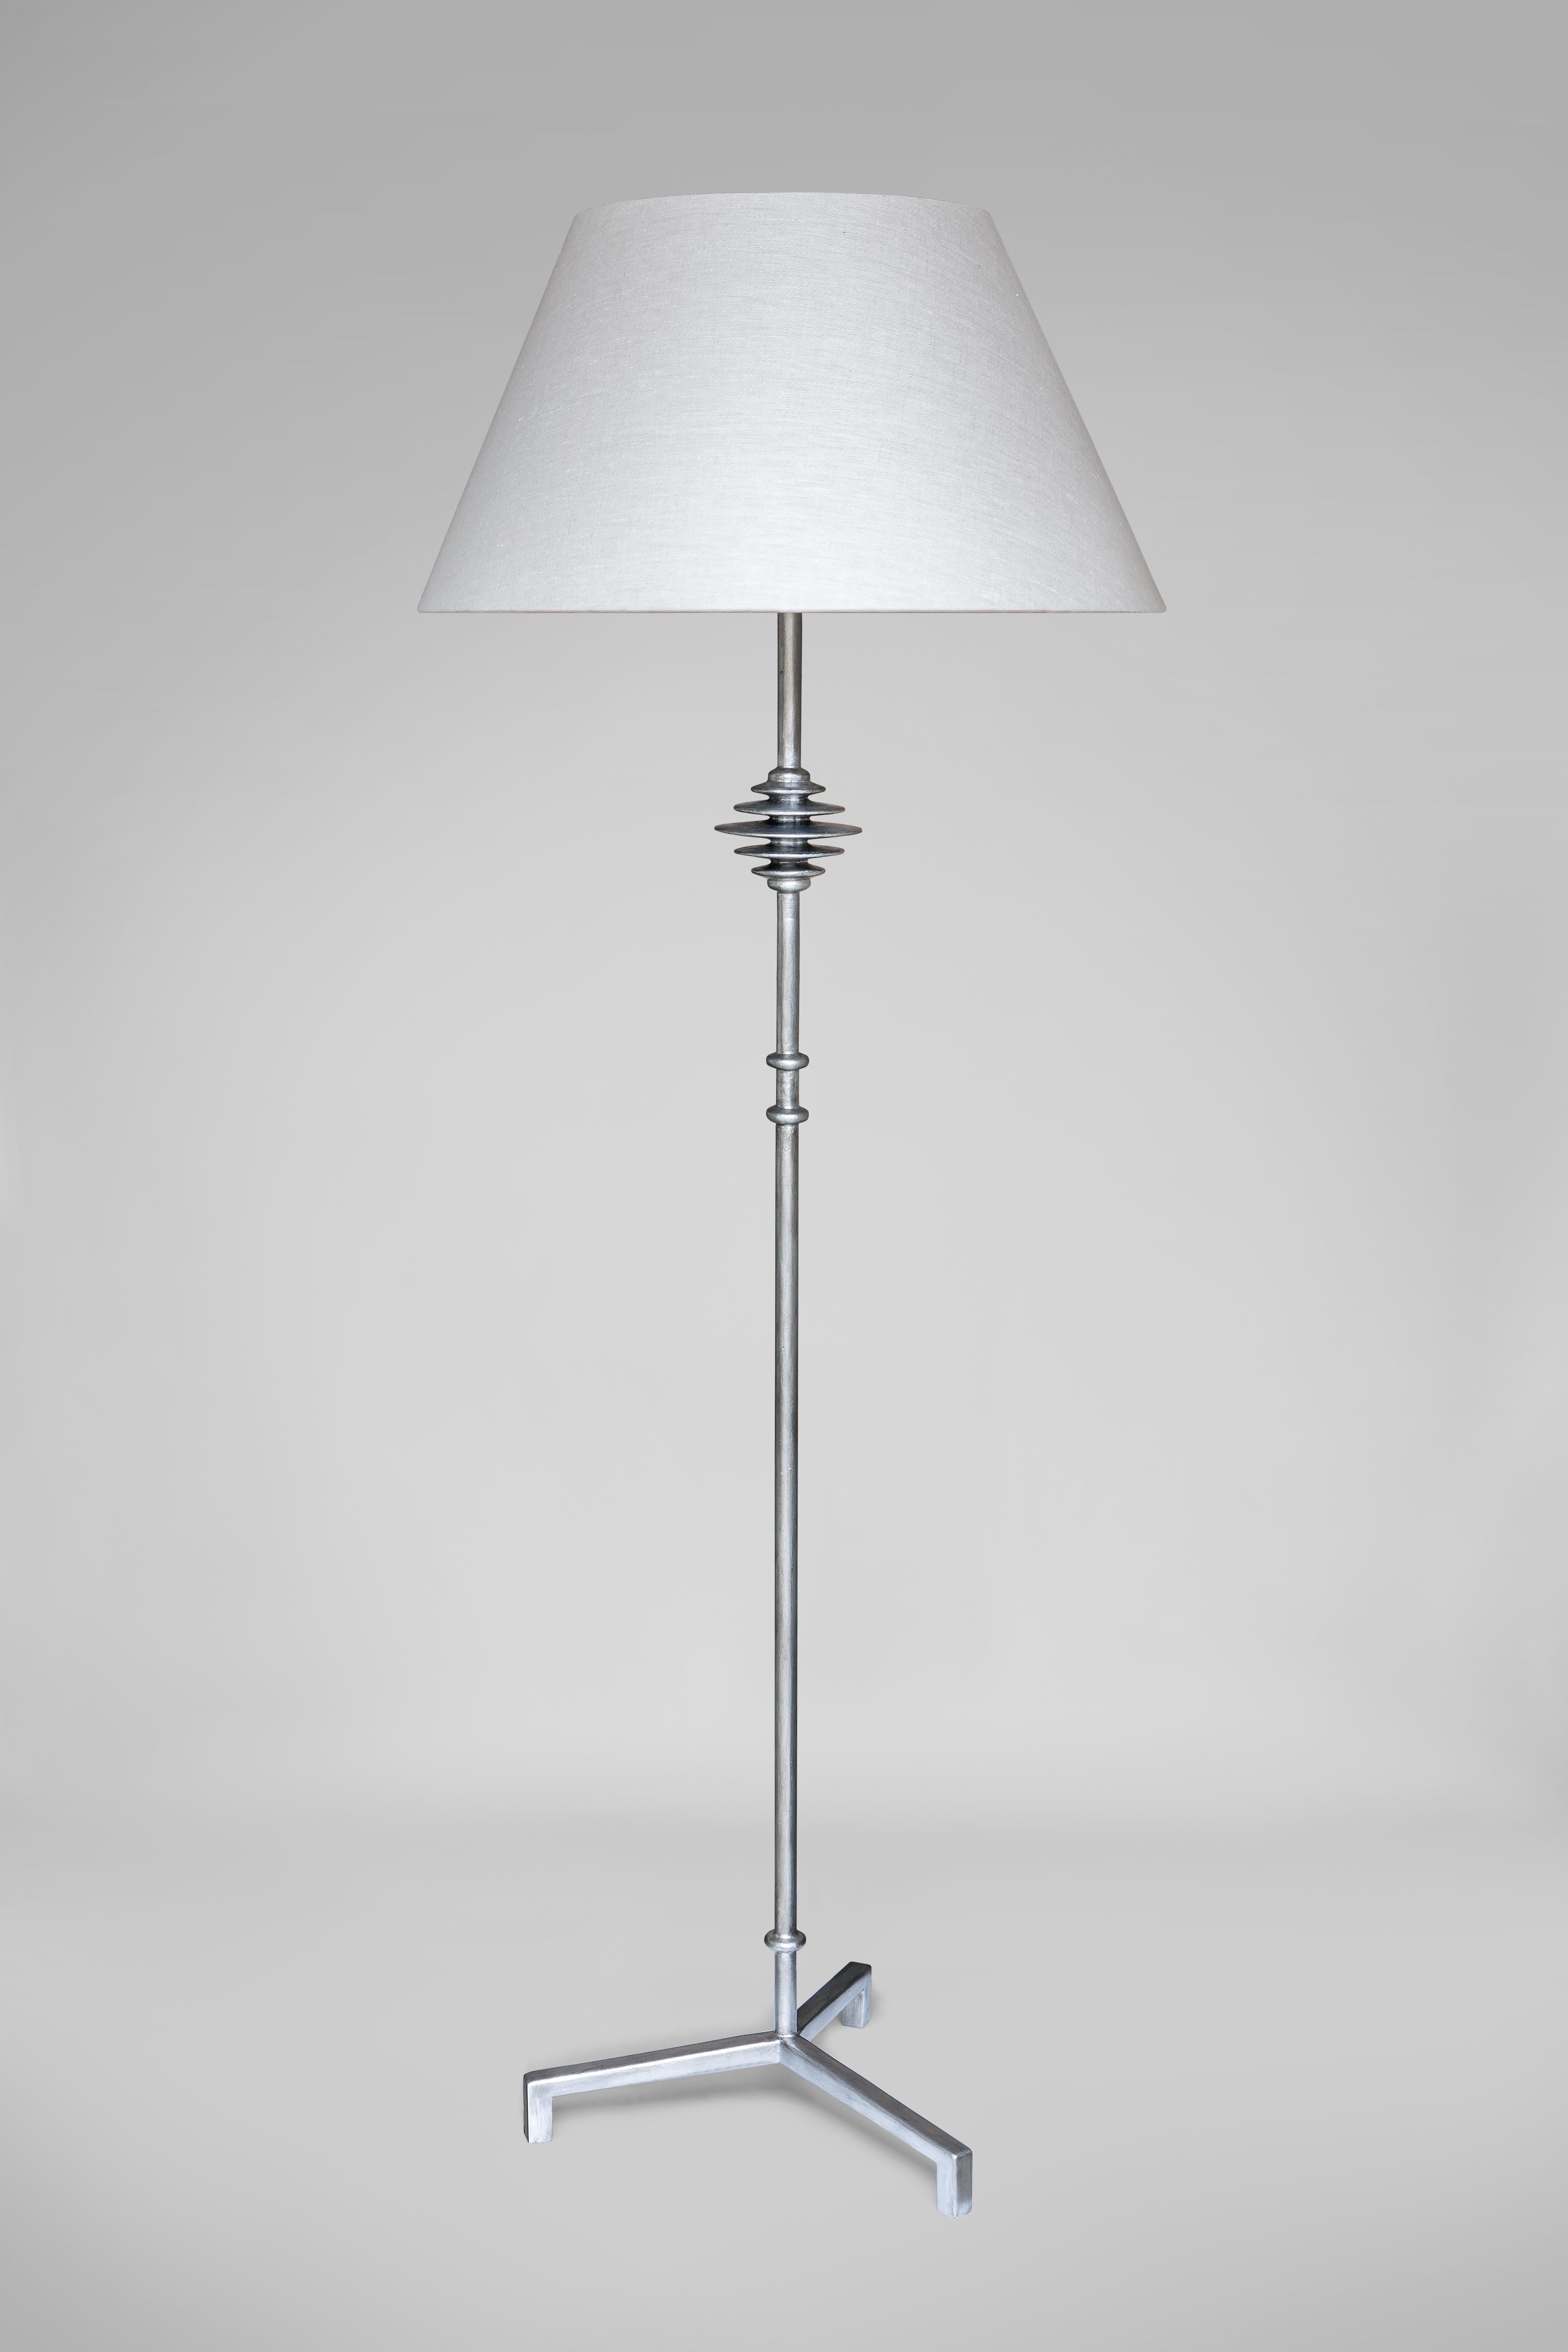 Lampadaire en plâtre sculpté à la main sur armature métallique, à la manière de Giacometti.

Abat-jour  non inclus
Dimensions recommandées de l'abat-jour : 
Ø 31 en haut x Ø 55 en bas x H 34 cm / Ø 12,20″ en haut x Ø 21,65″ en bas x H 13,38″

LAMPE